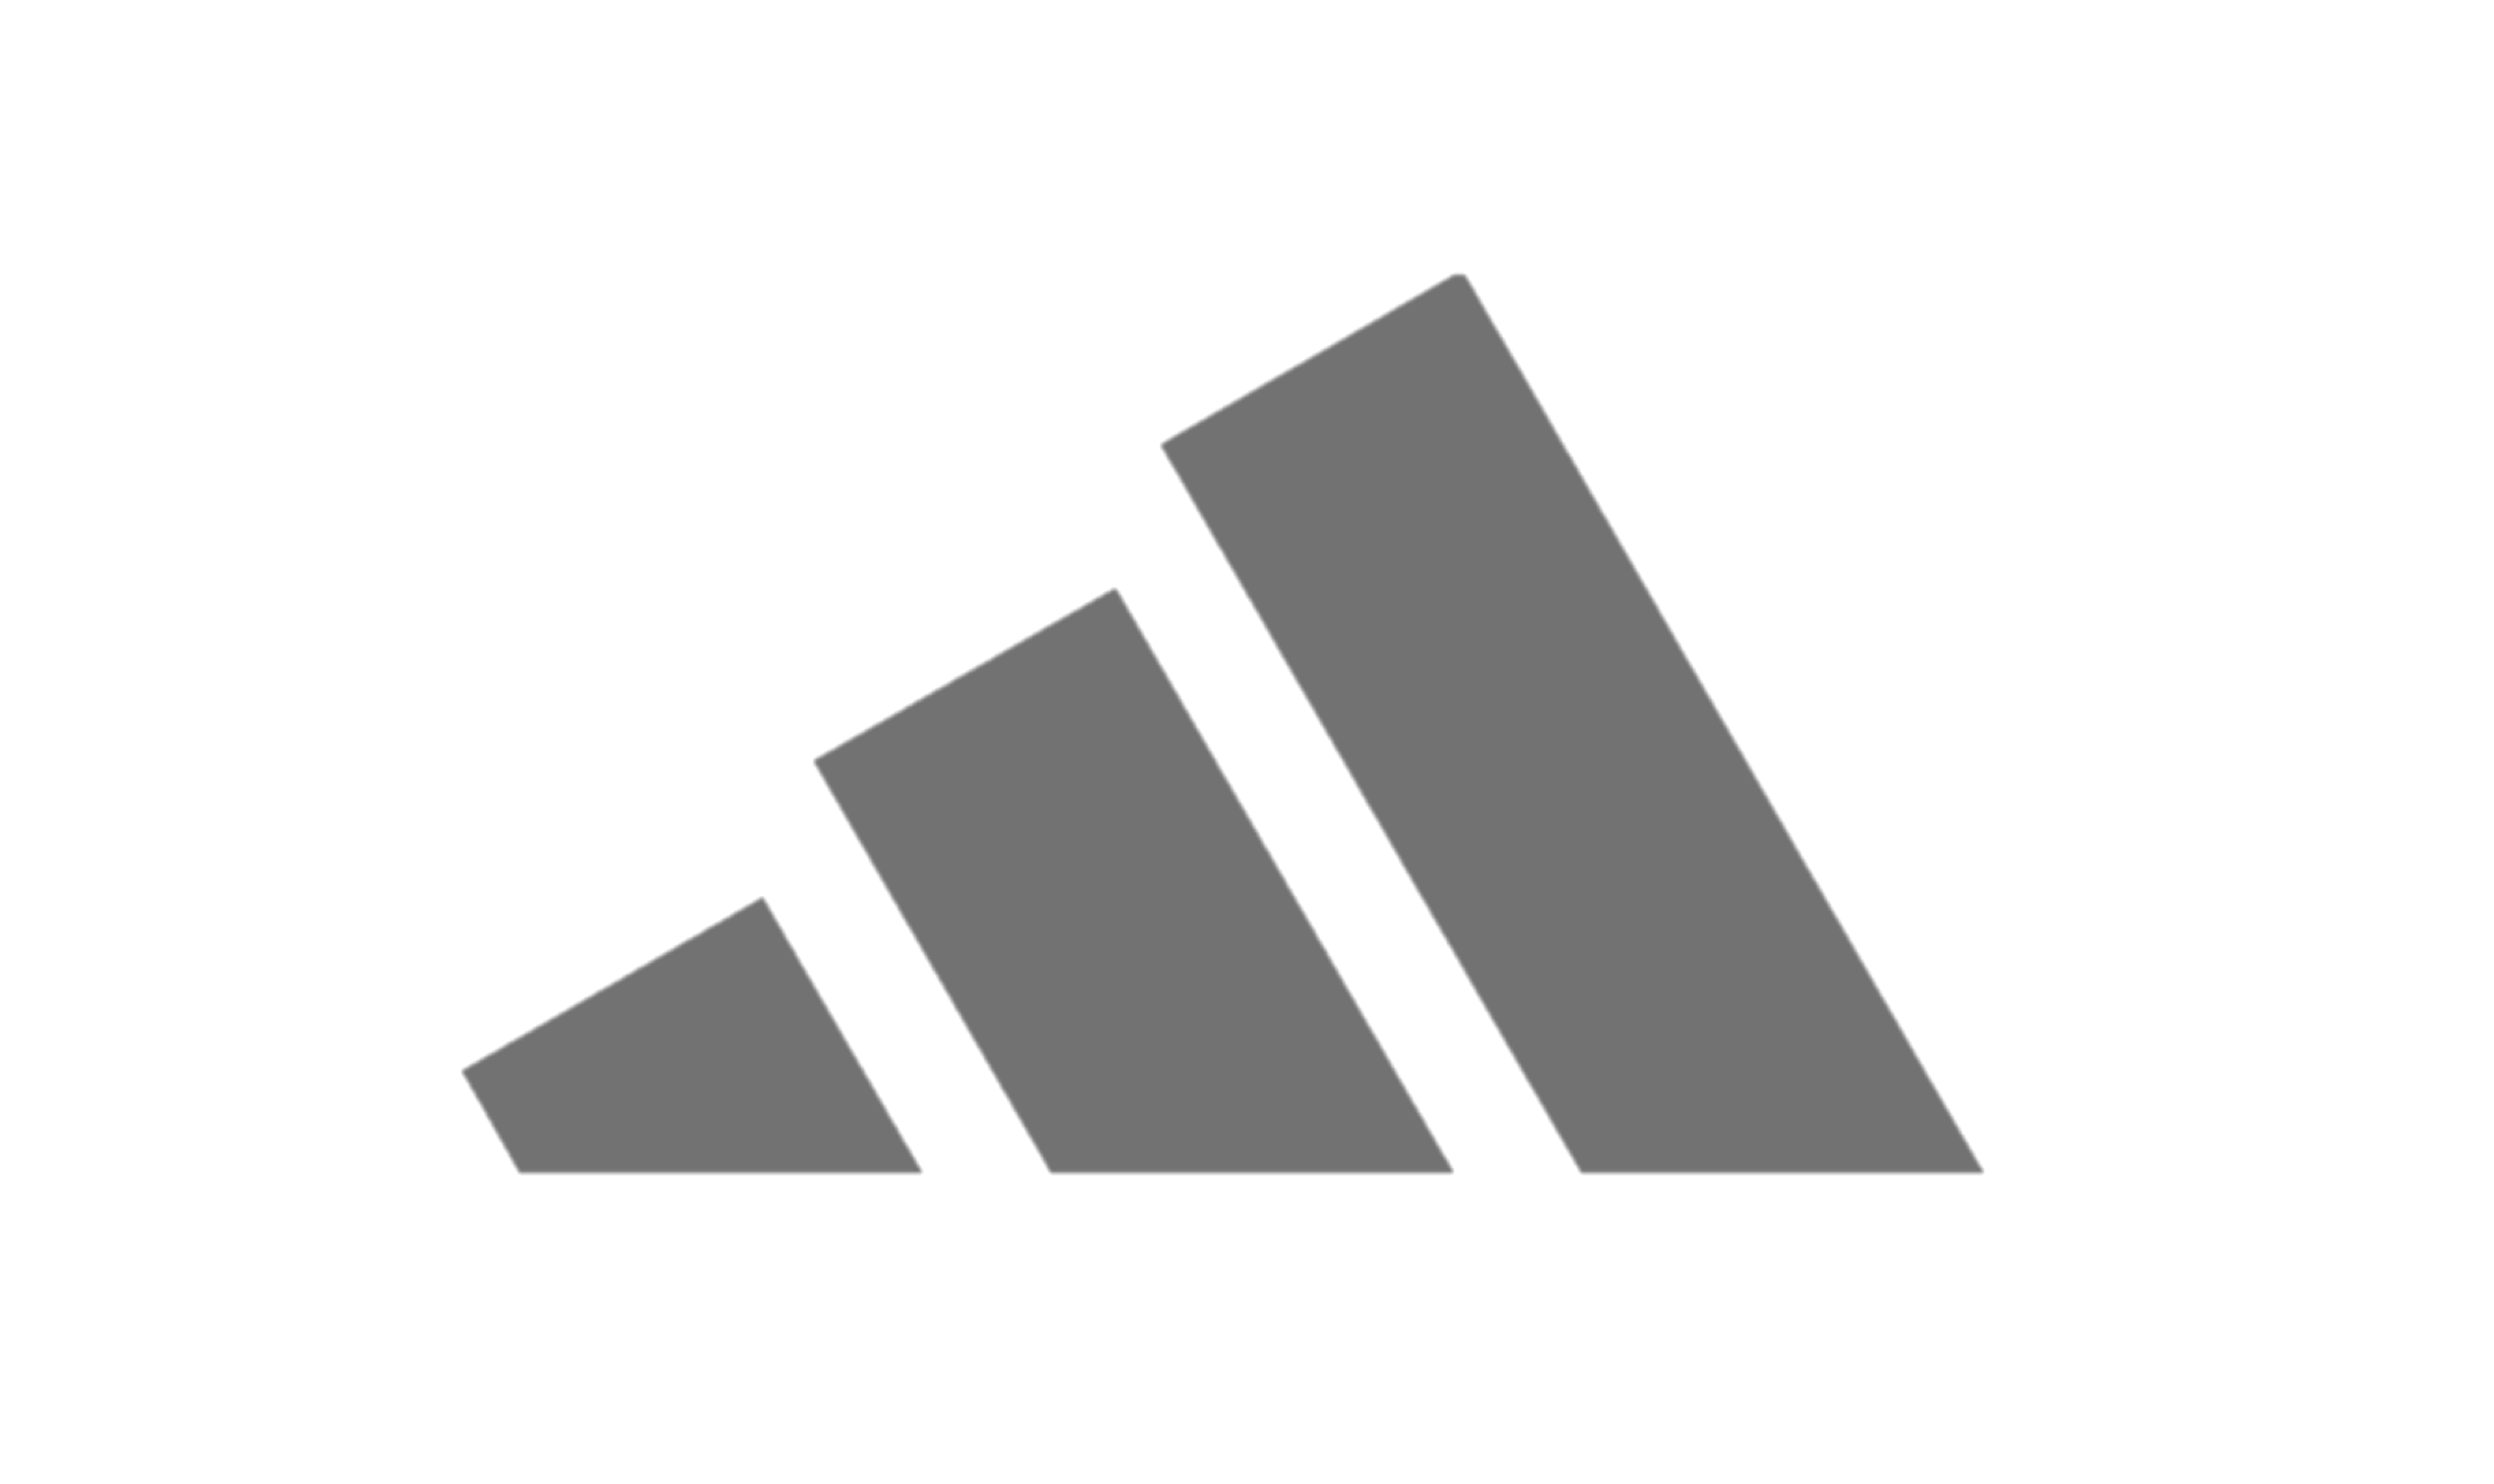 adidas Logo